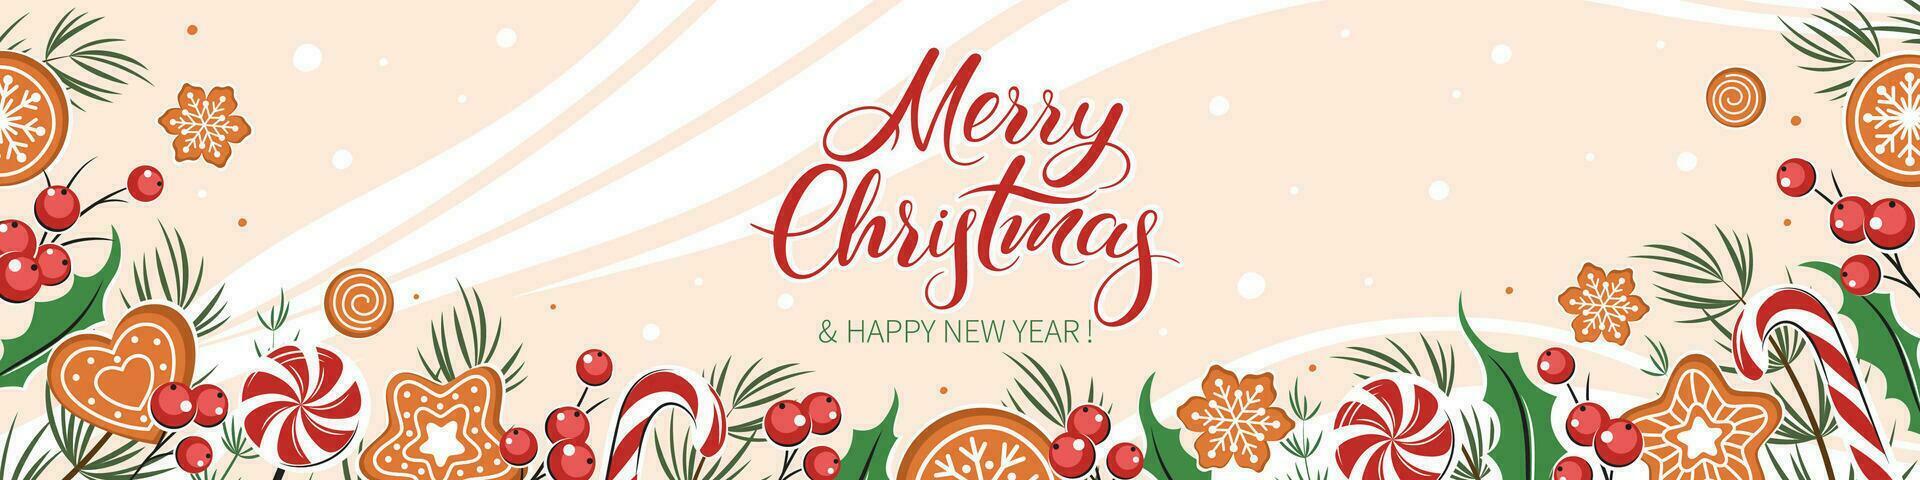 fondo de feliz navidad y feliz año nuevo. tarjeta decorada con diferentes plantas de invierno, galletas y dulces. ilustración vectorial vector